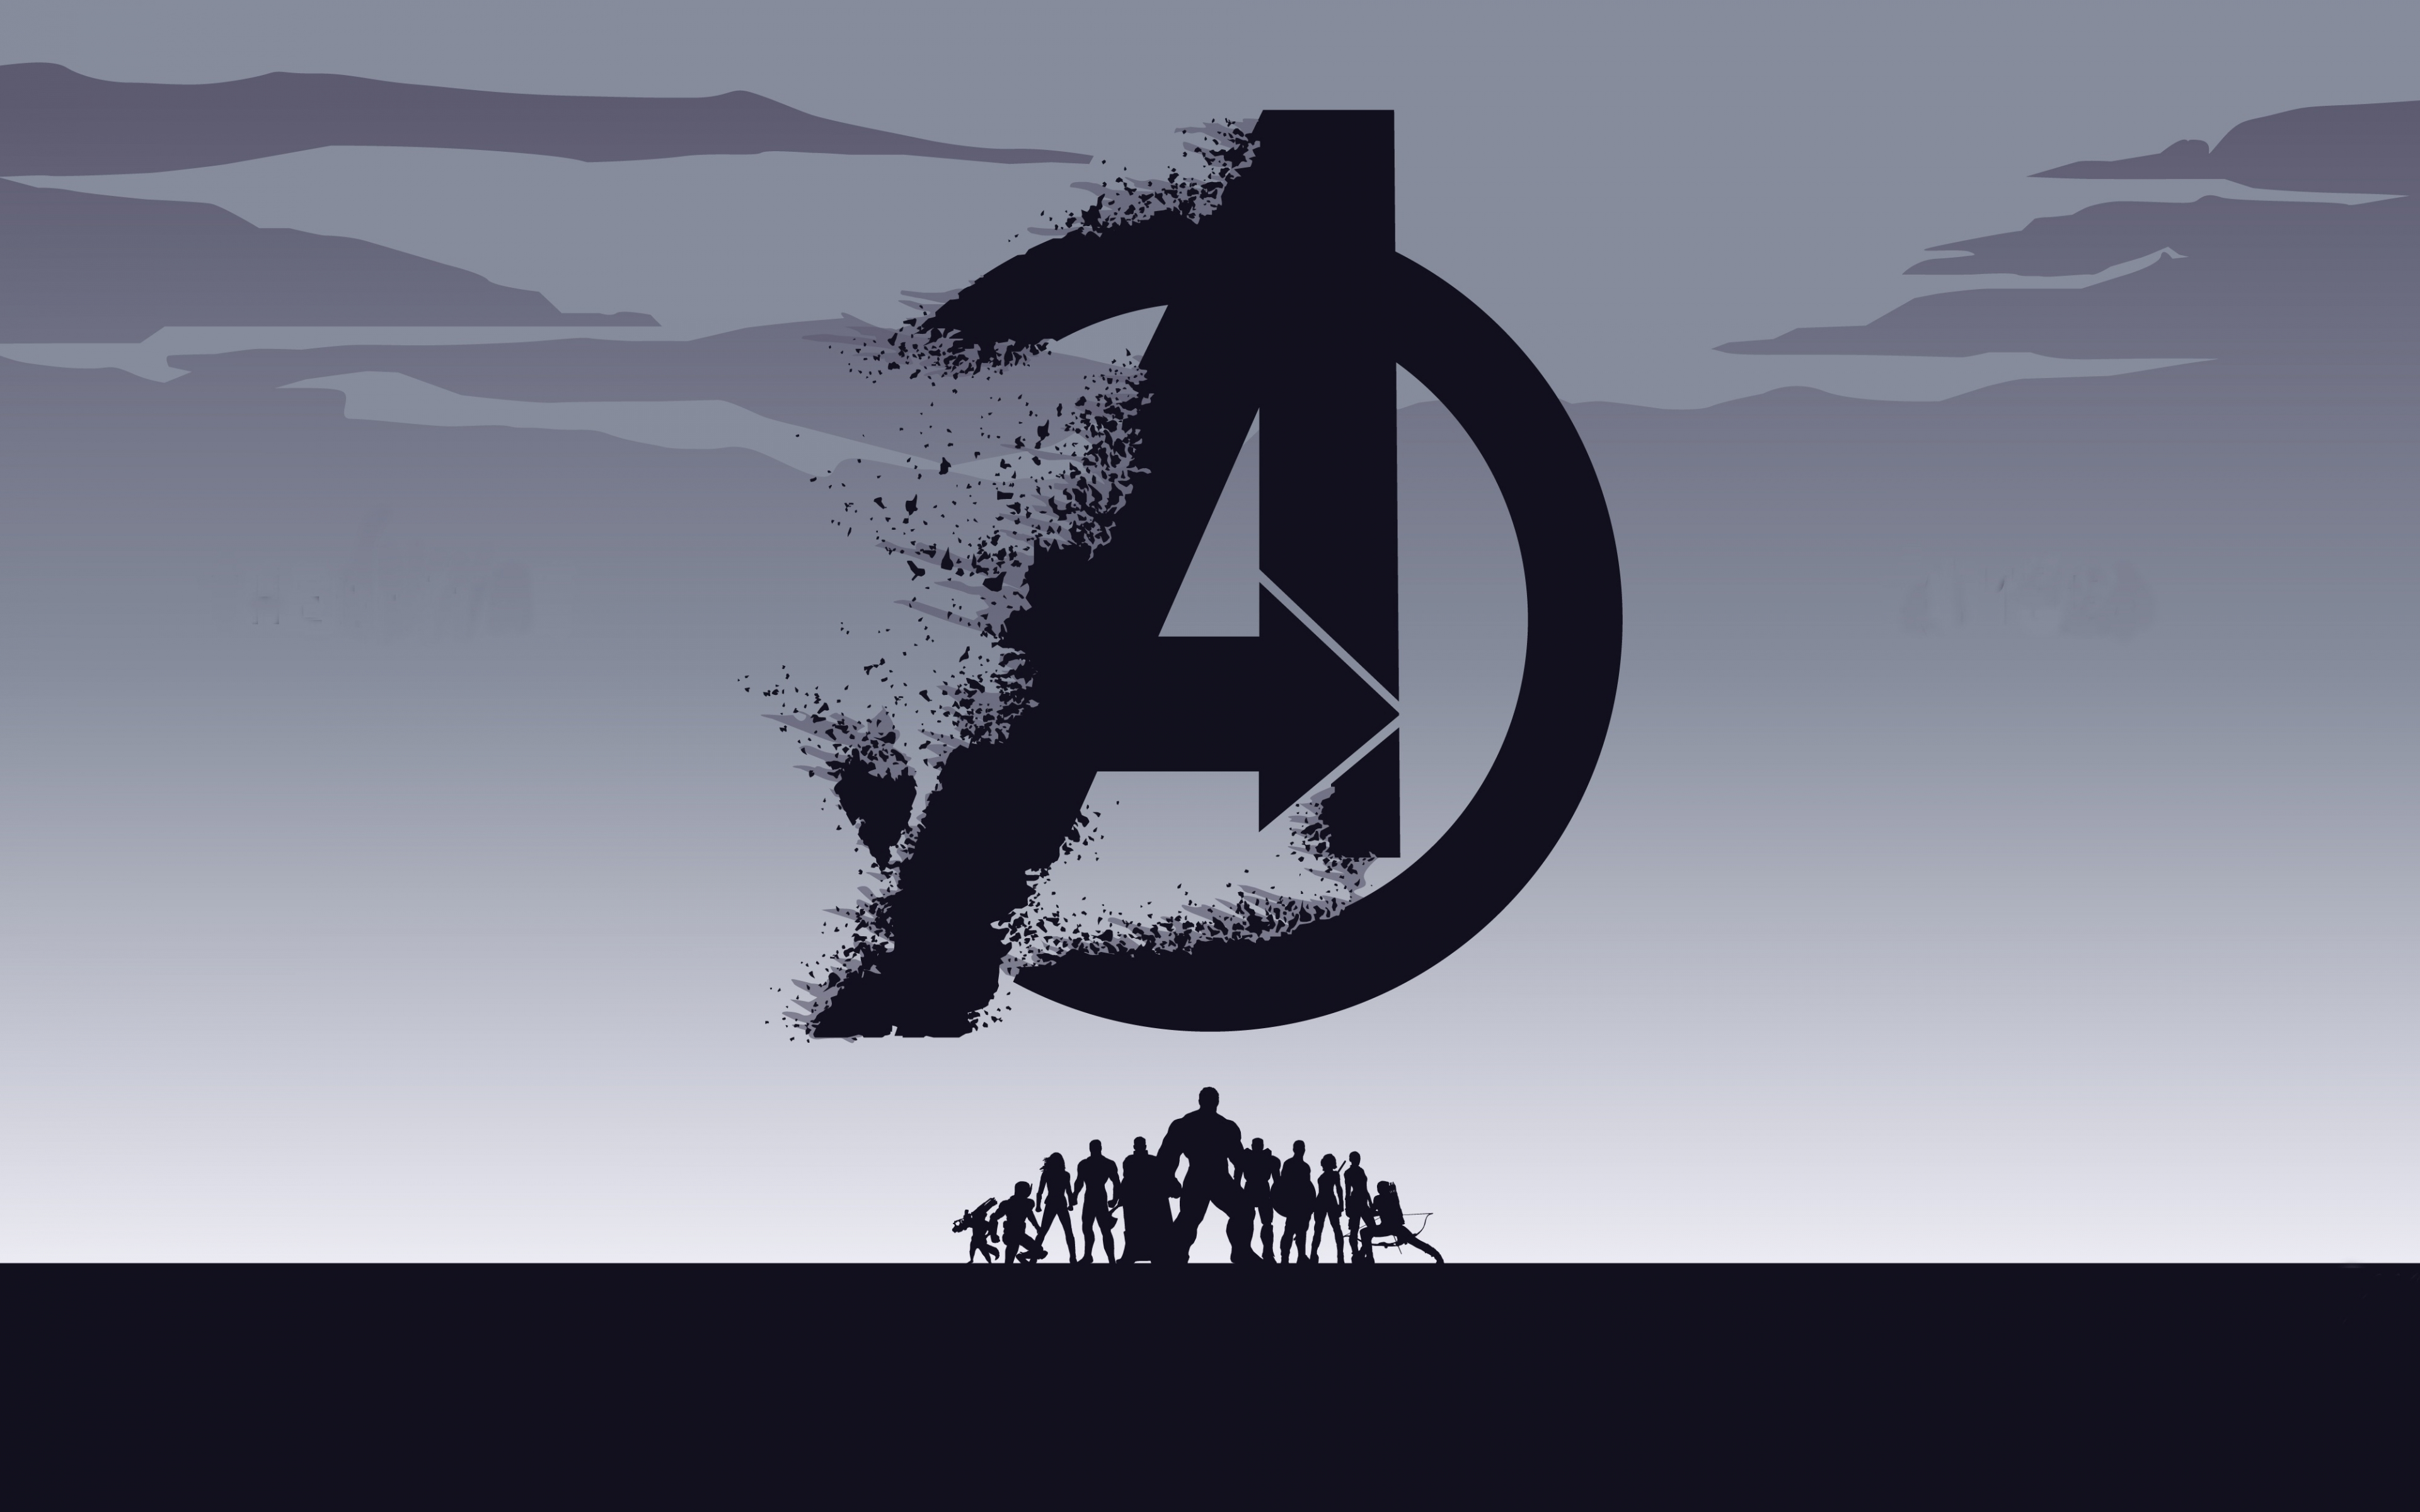 2019 movie, Avengers: Endgame, minimal, silhouette, art, 3840x2400 wallpaper